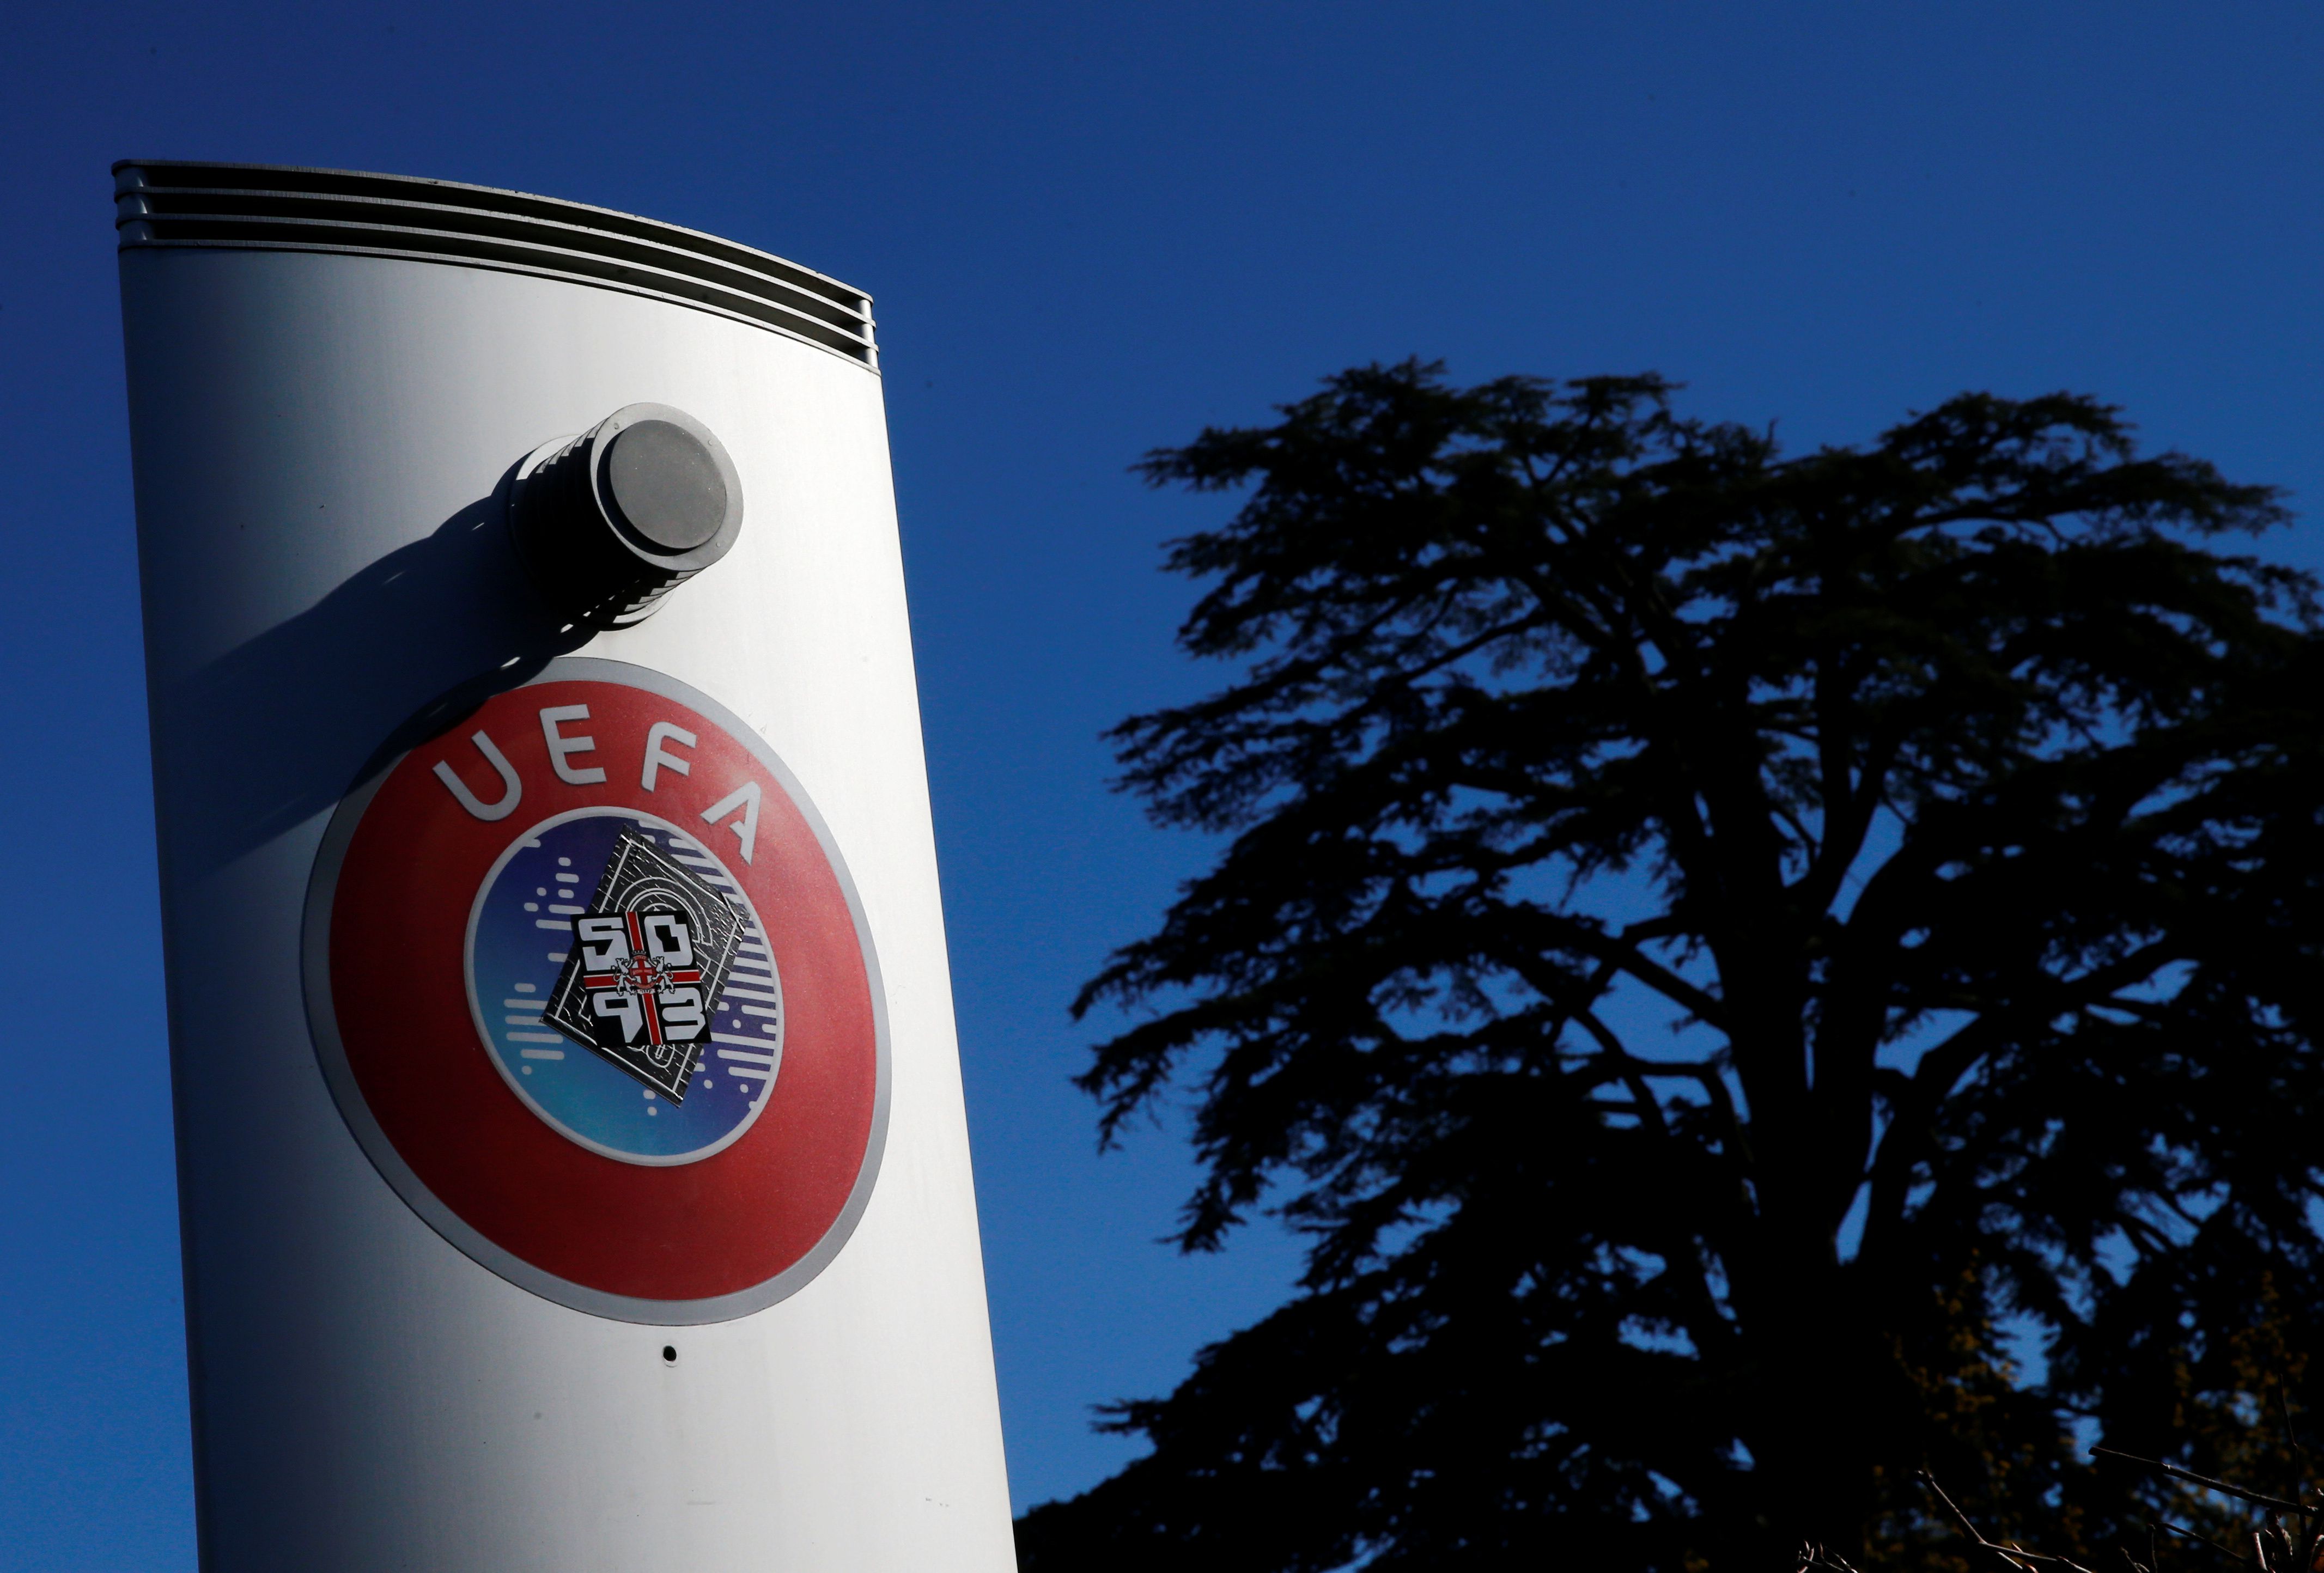 La UEFA eligió finalmente no poner fechas tentativas para la disputa de los torneos y partidos que están bajo de su jurisdicción (REUTERS)